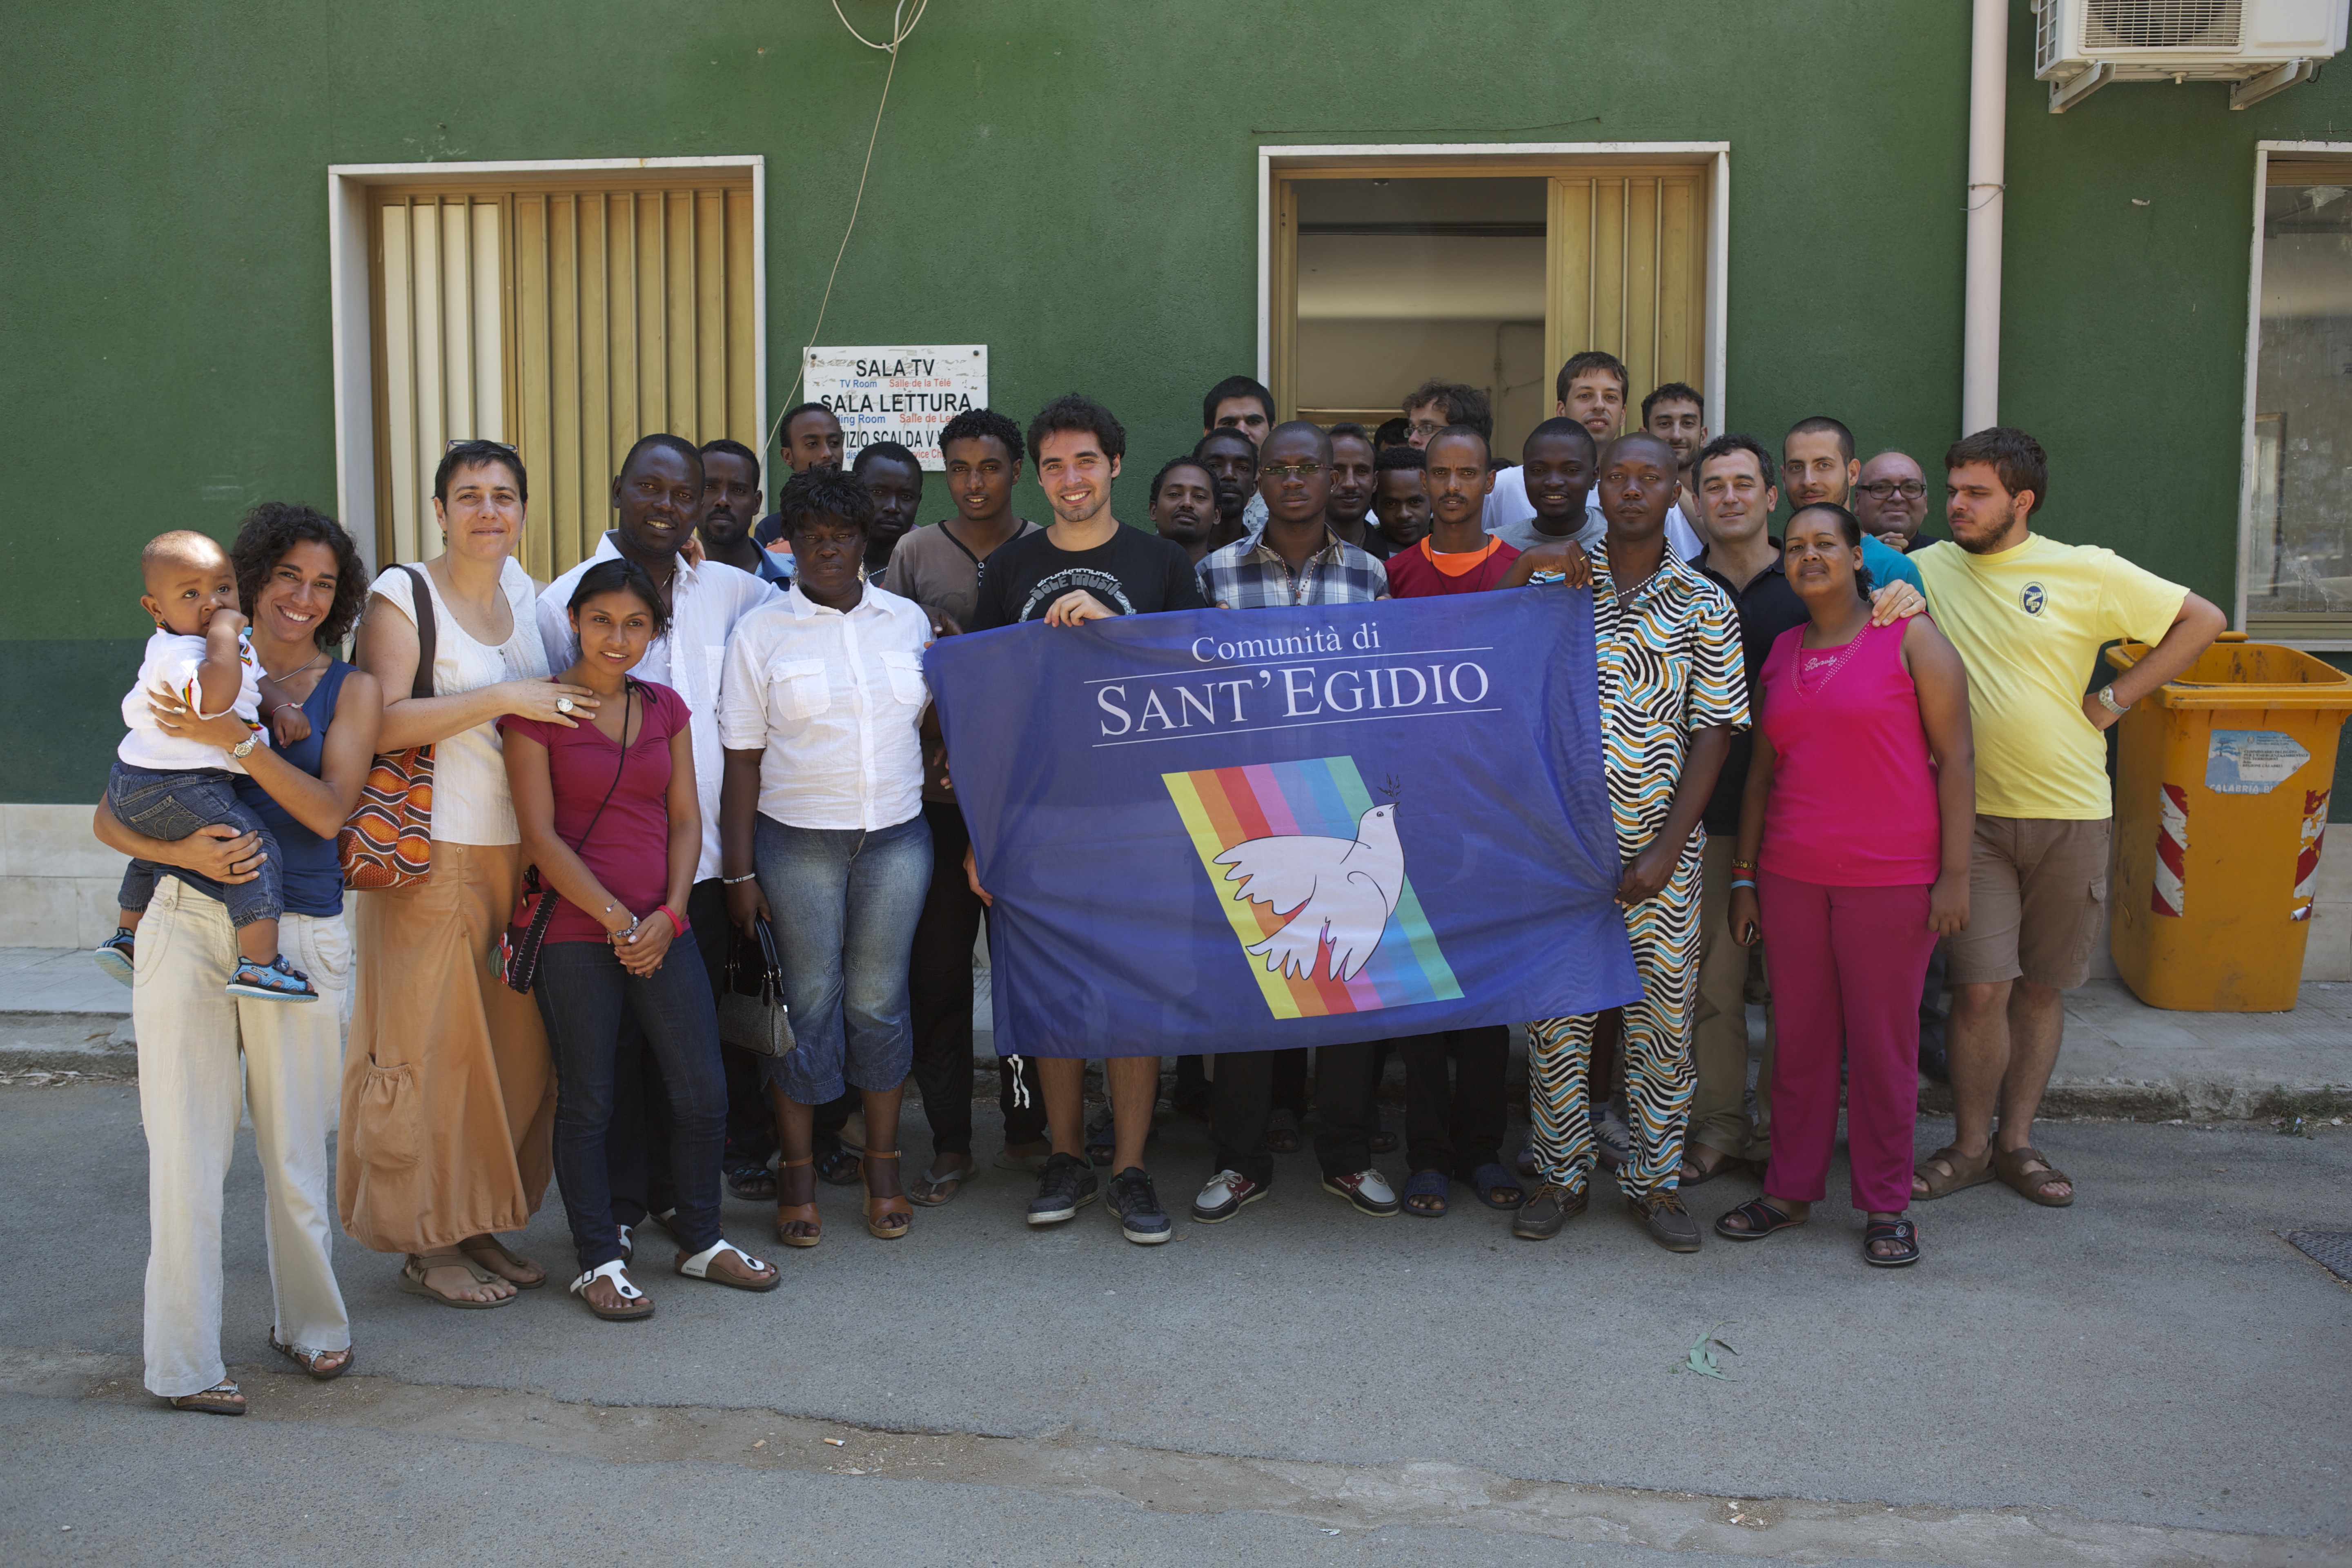 Giochi e lezioni diitaliano: una settimana insieme agli immigrati nel centro di accoglienza per richiedenti asilo di Crotone